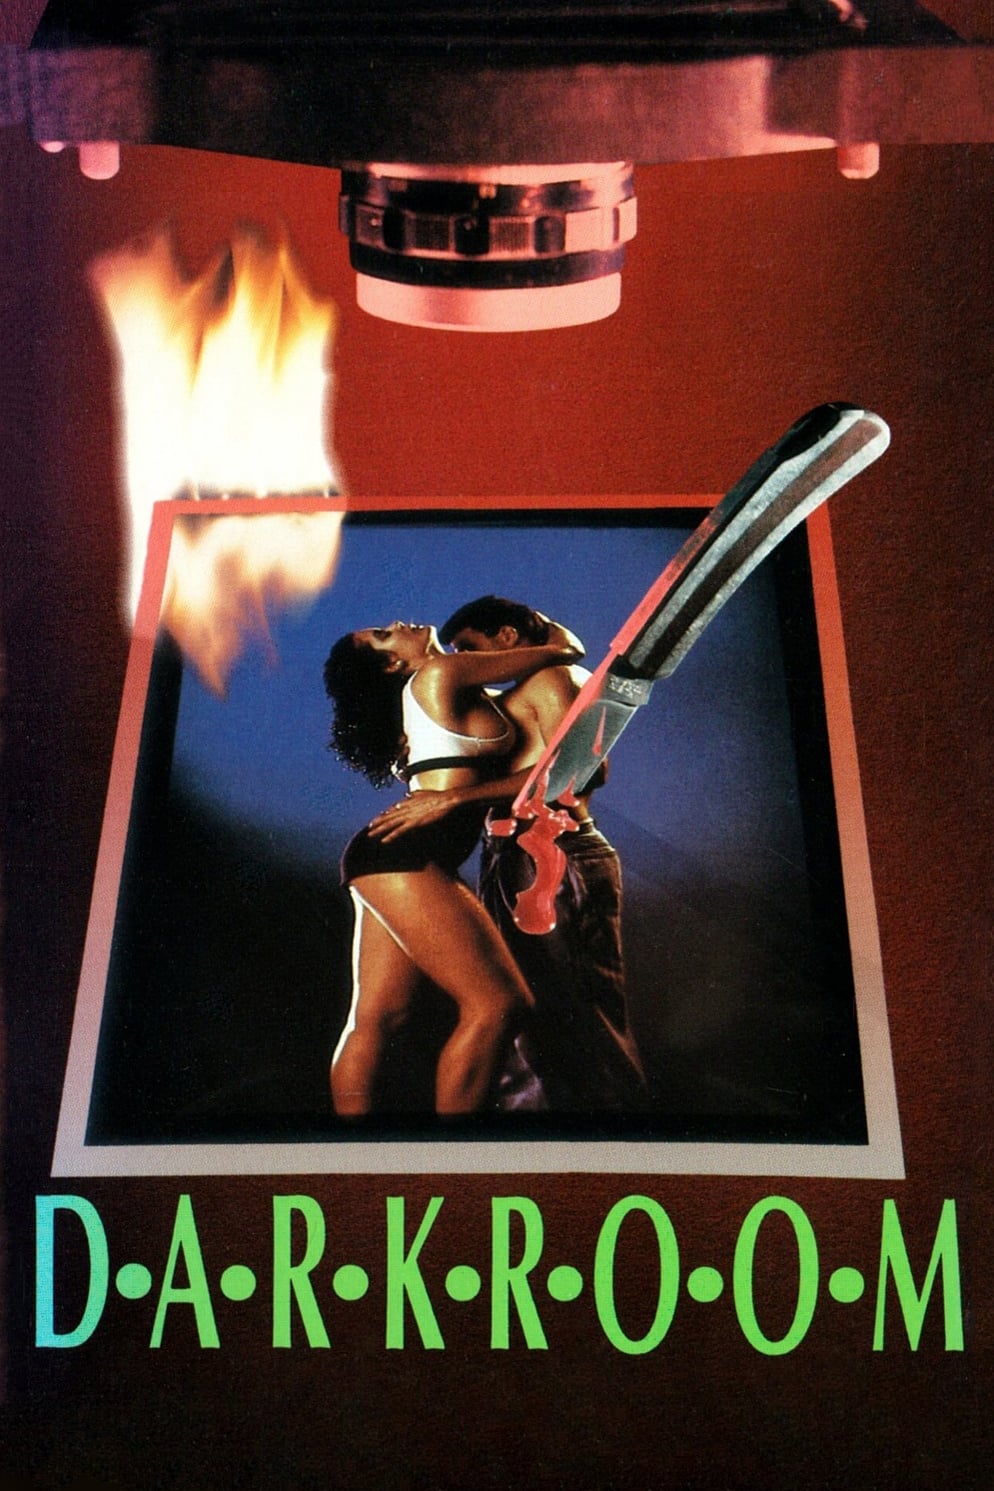 Karanlık Oda - Darkroom (1989) BluRay - Türkçe Ses P17muxm